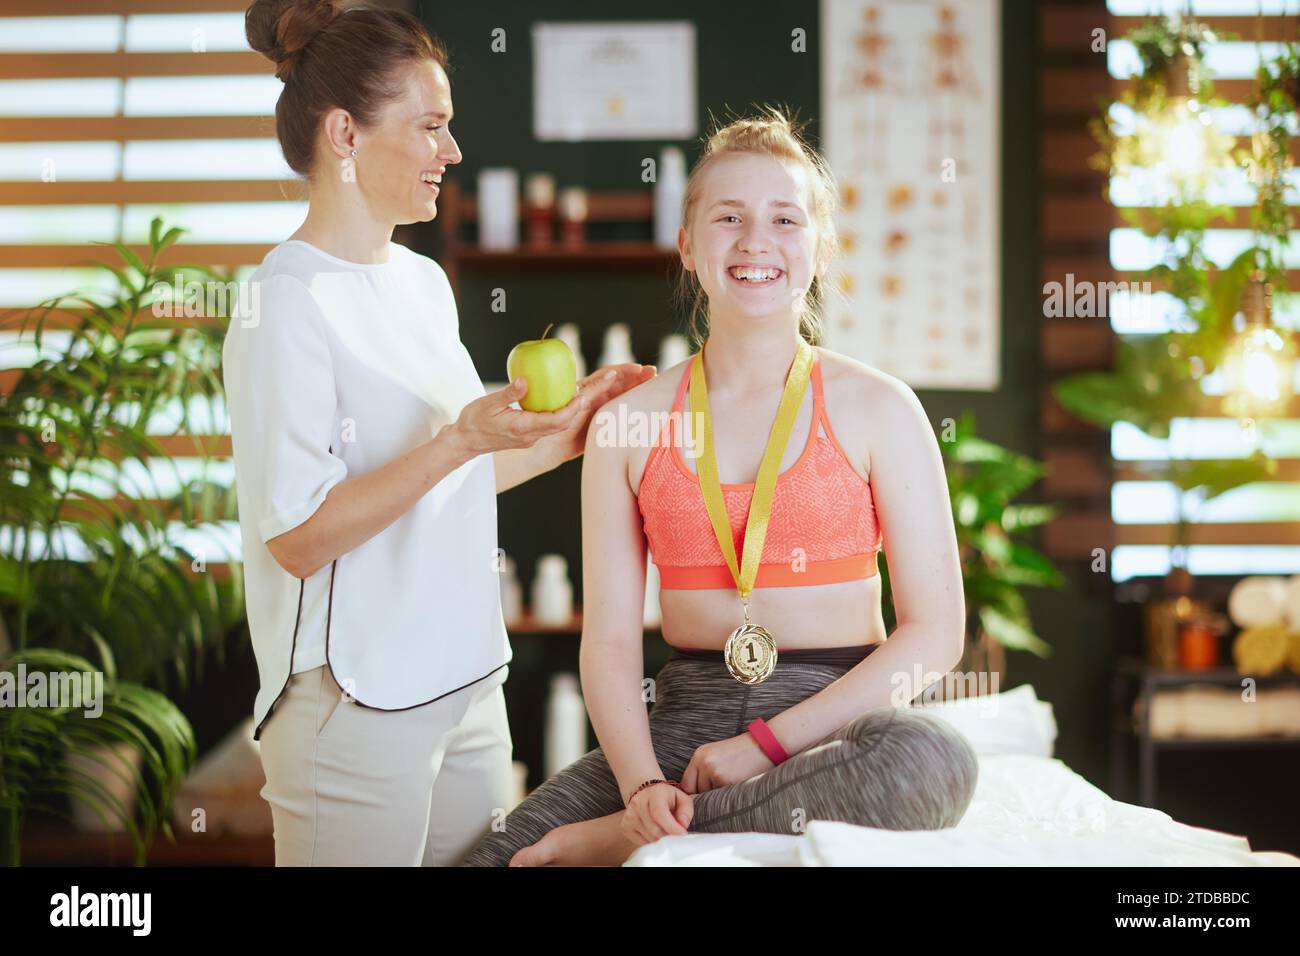 Le temps des soins de santé. femme thérapeute de massage souriant dans l'armoire de massage avec le client adolescent, une pomme et médaille d'or. Banque D'Images